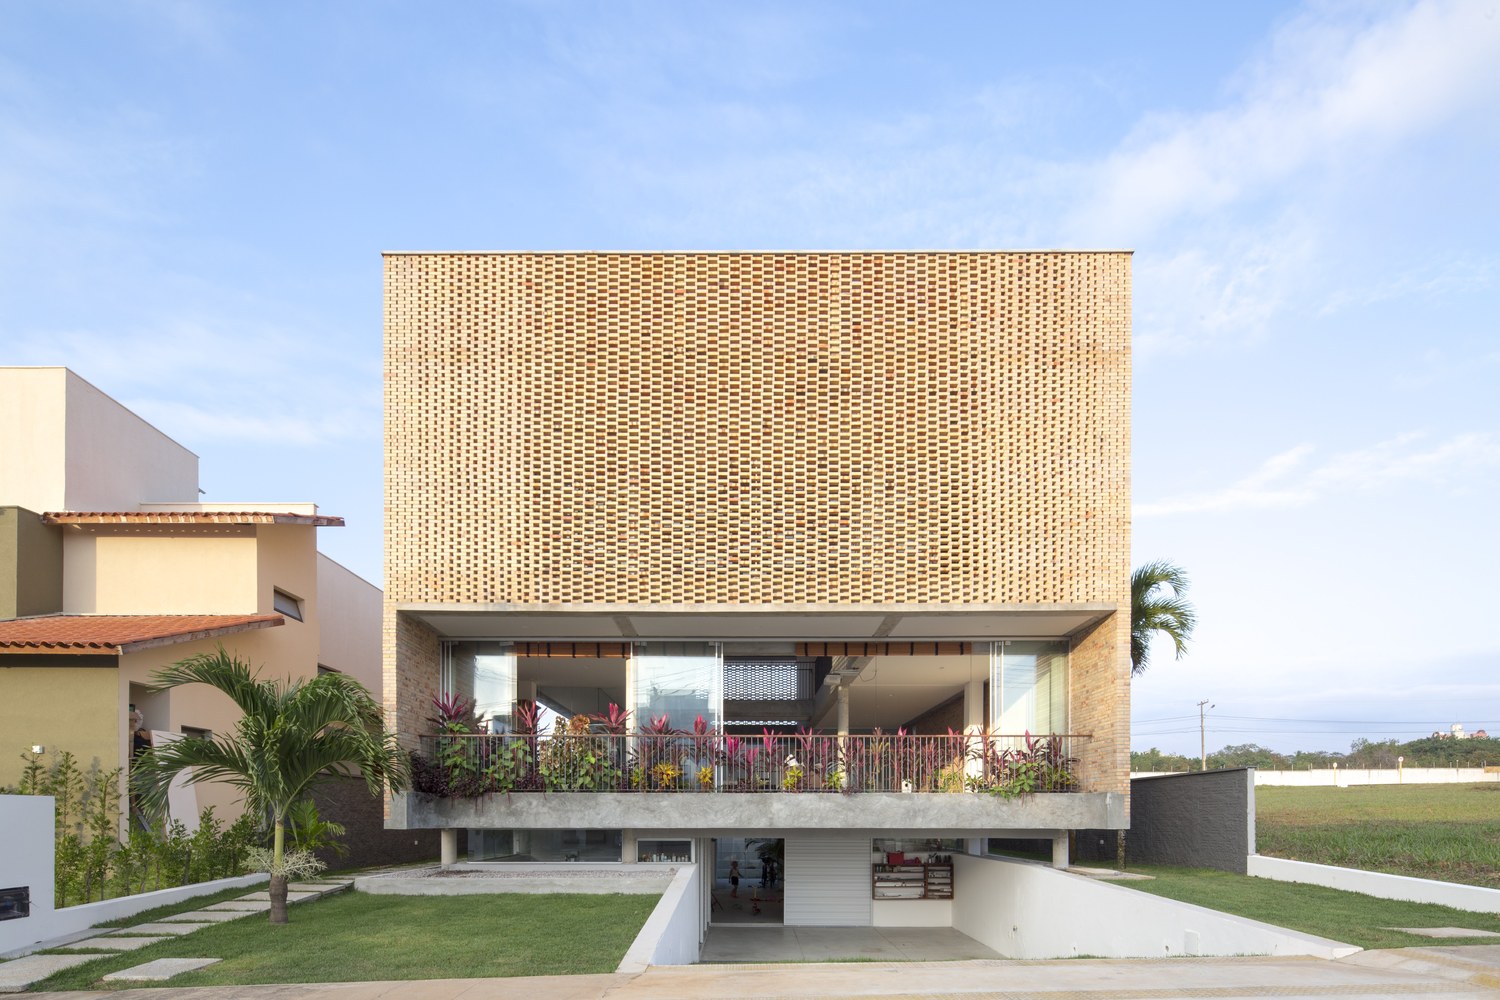 La composition des briques permet une ouverture dans la façade de cette belle maison